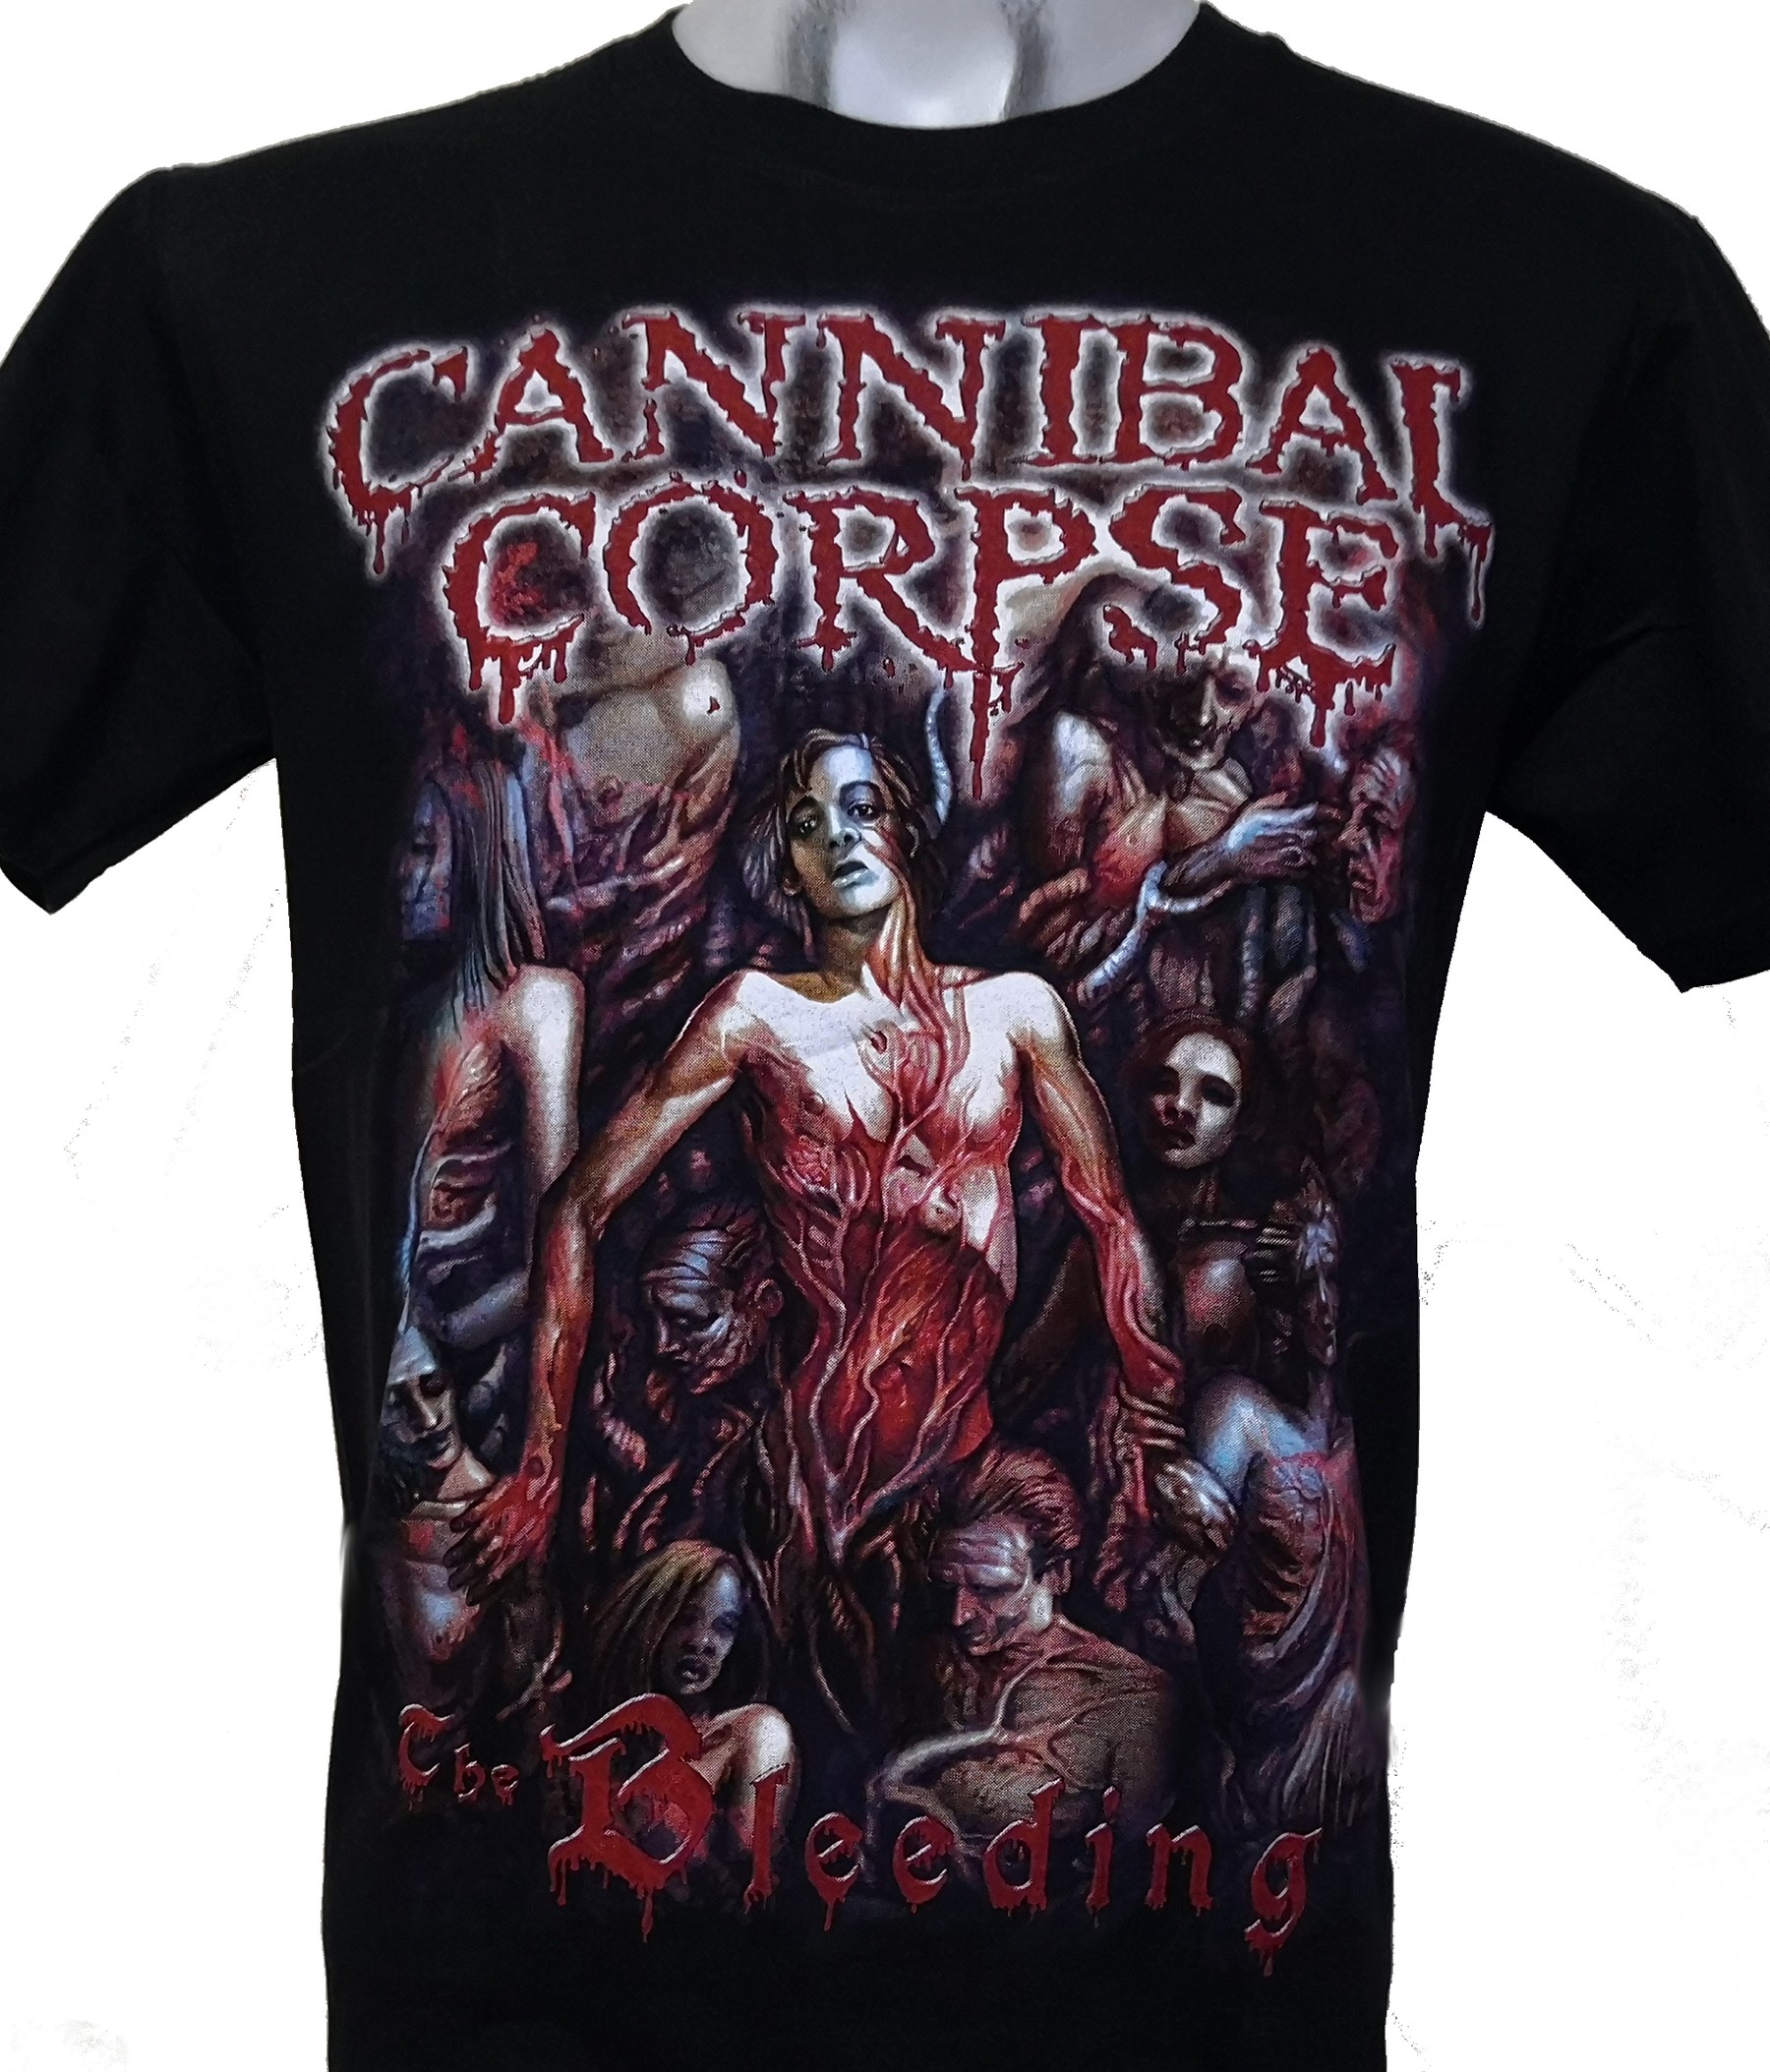 Cannibal corpse перевод